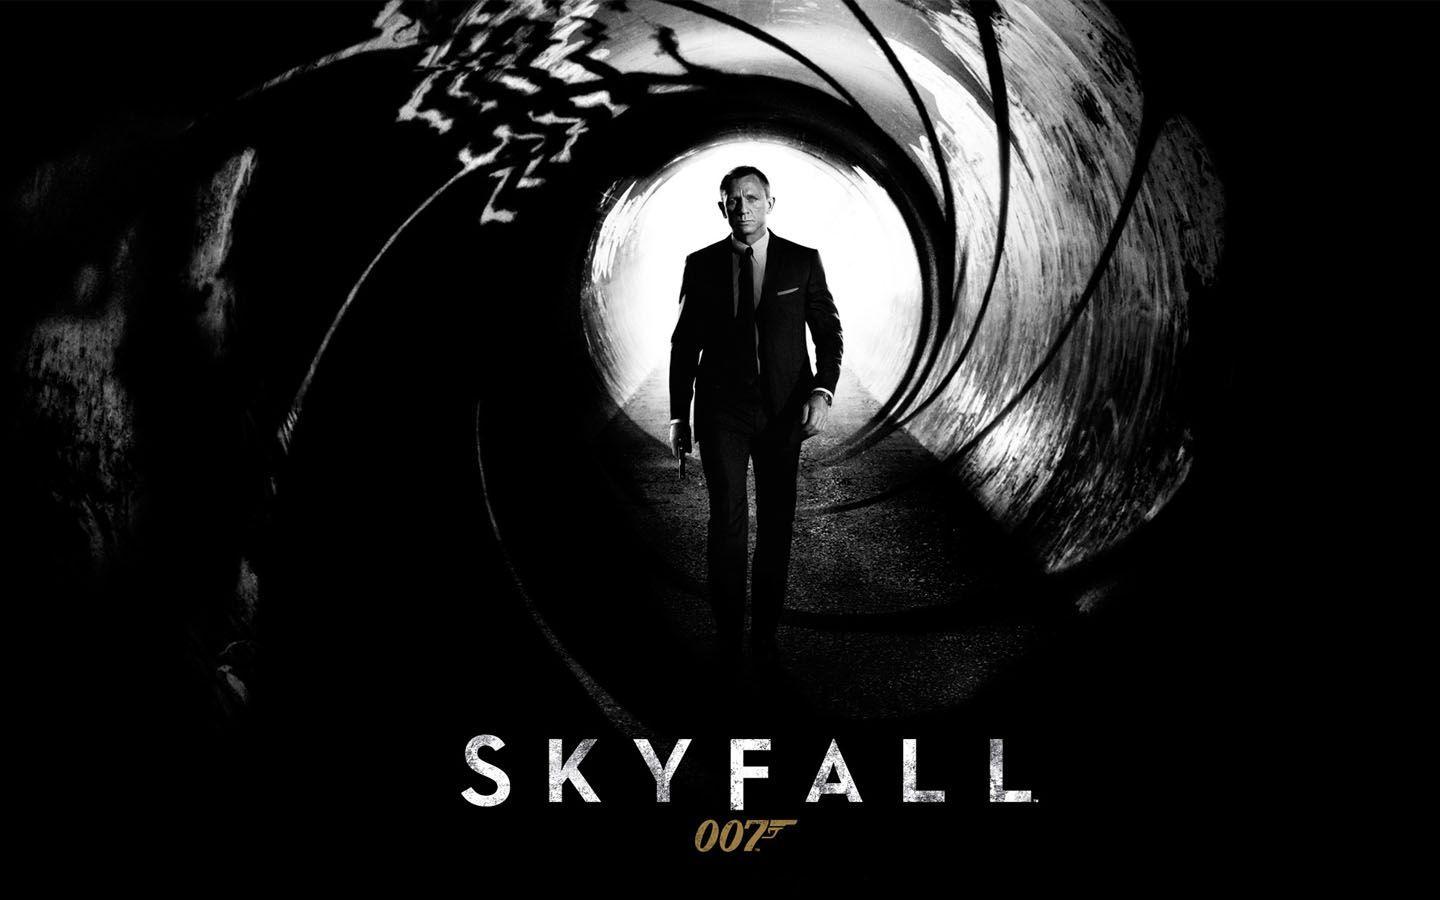 James Bond Skyfall Movie Wallpaper